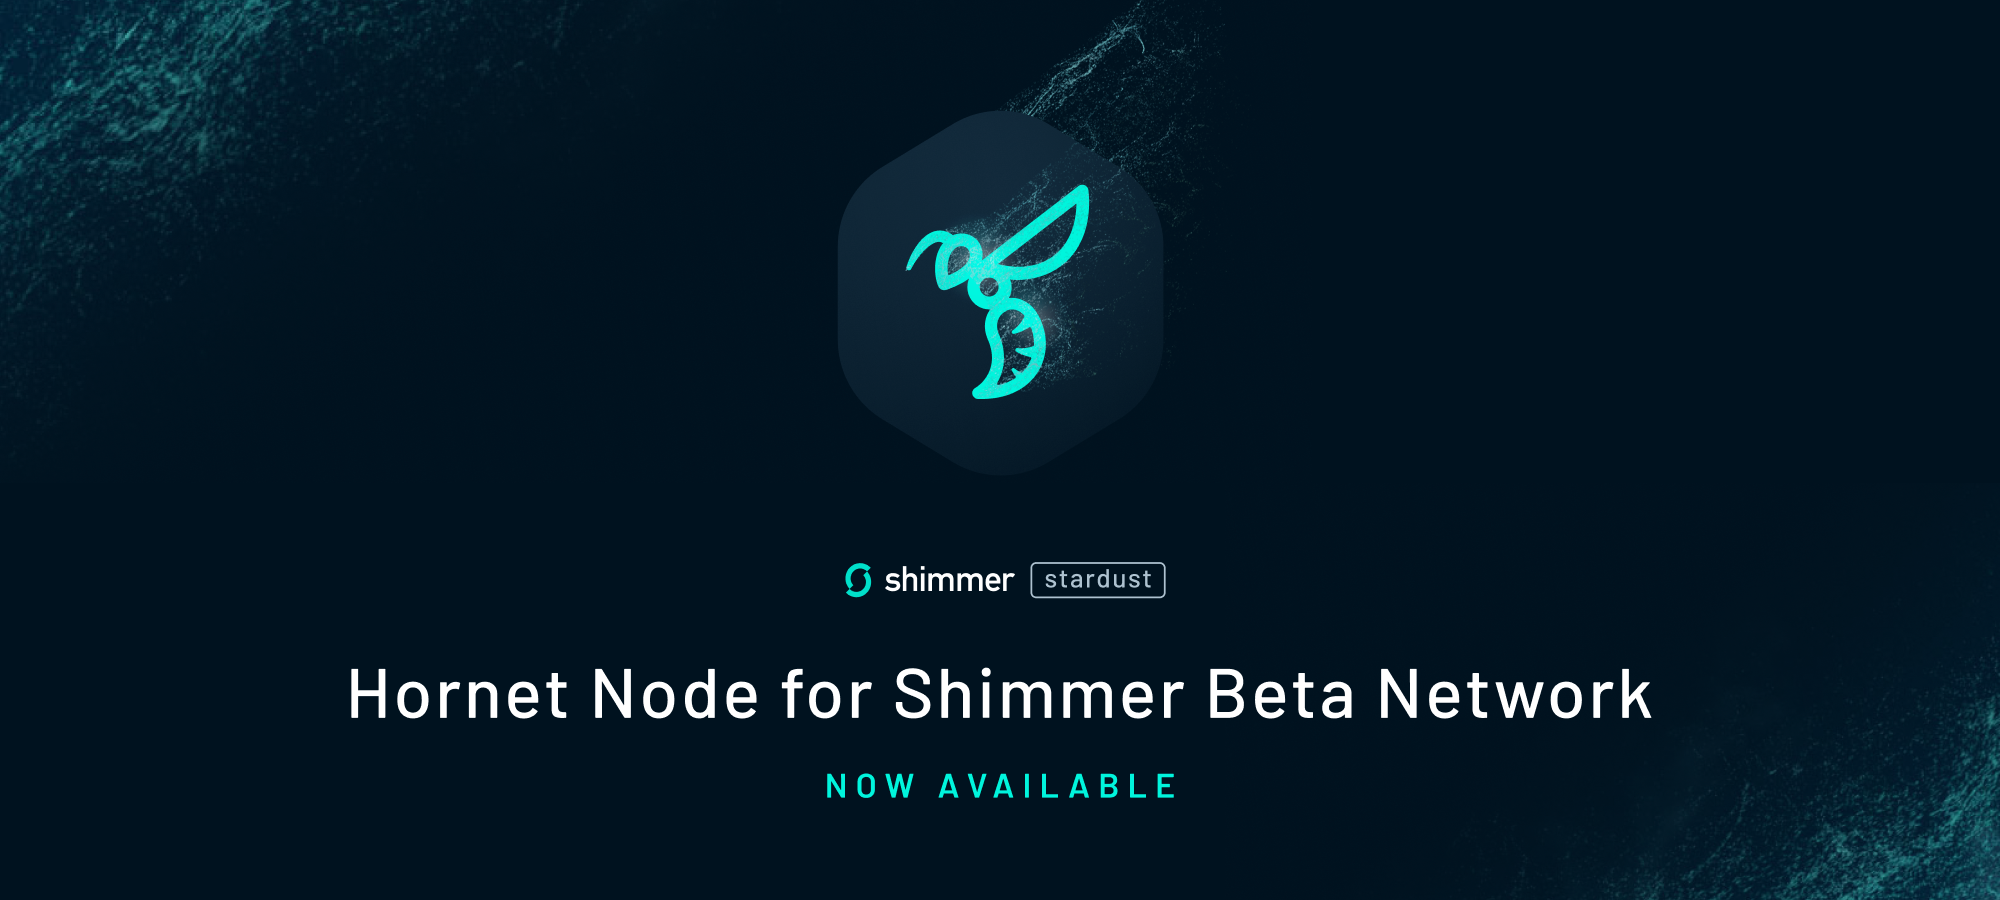 Hornet Node Software for Shimmer Beta Network